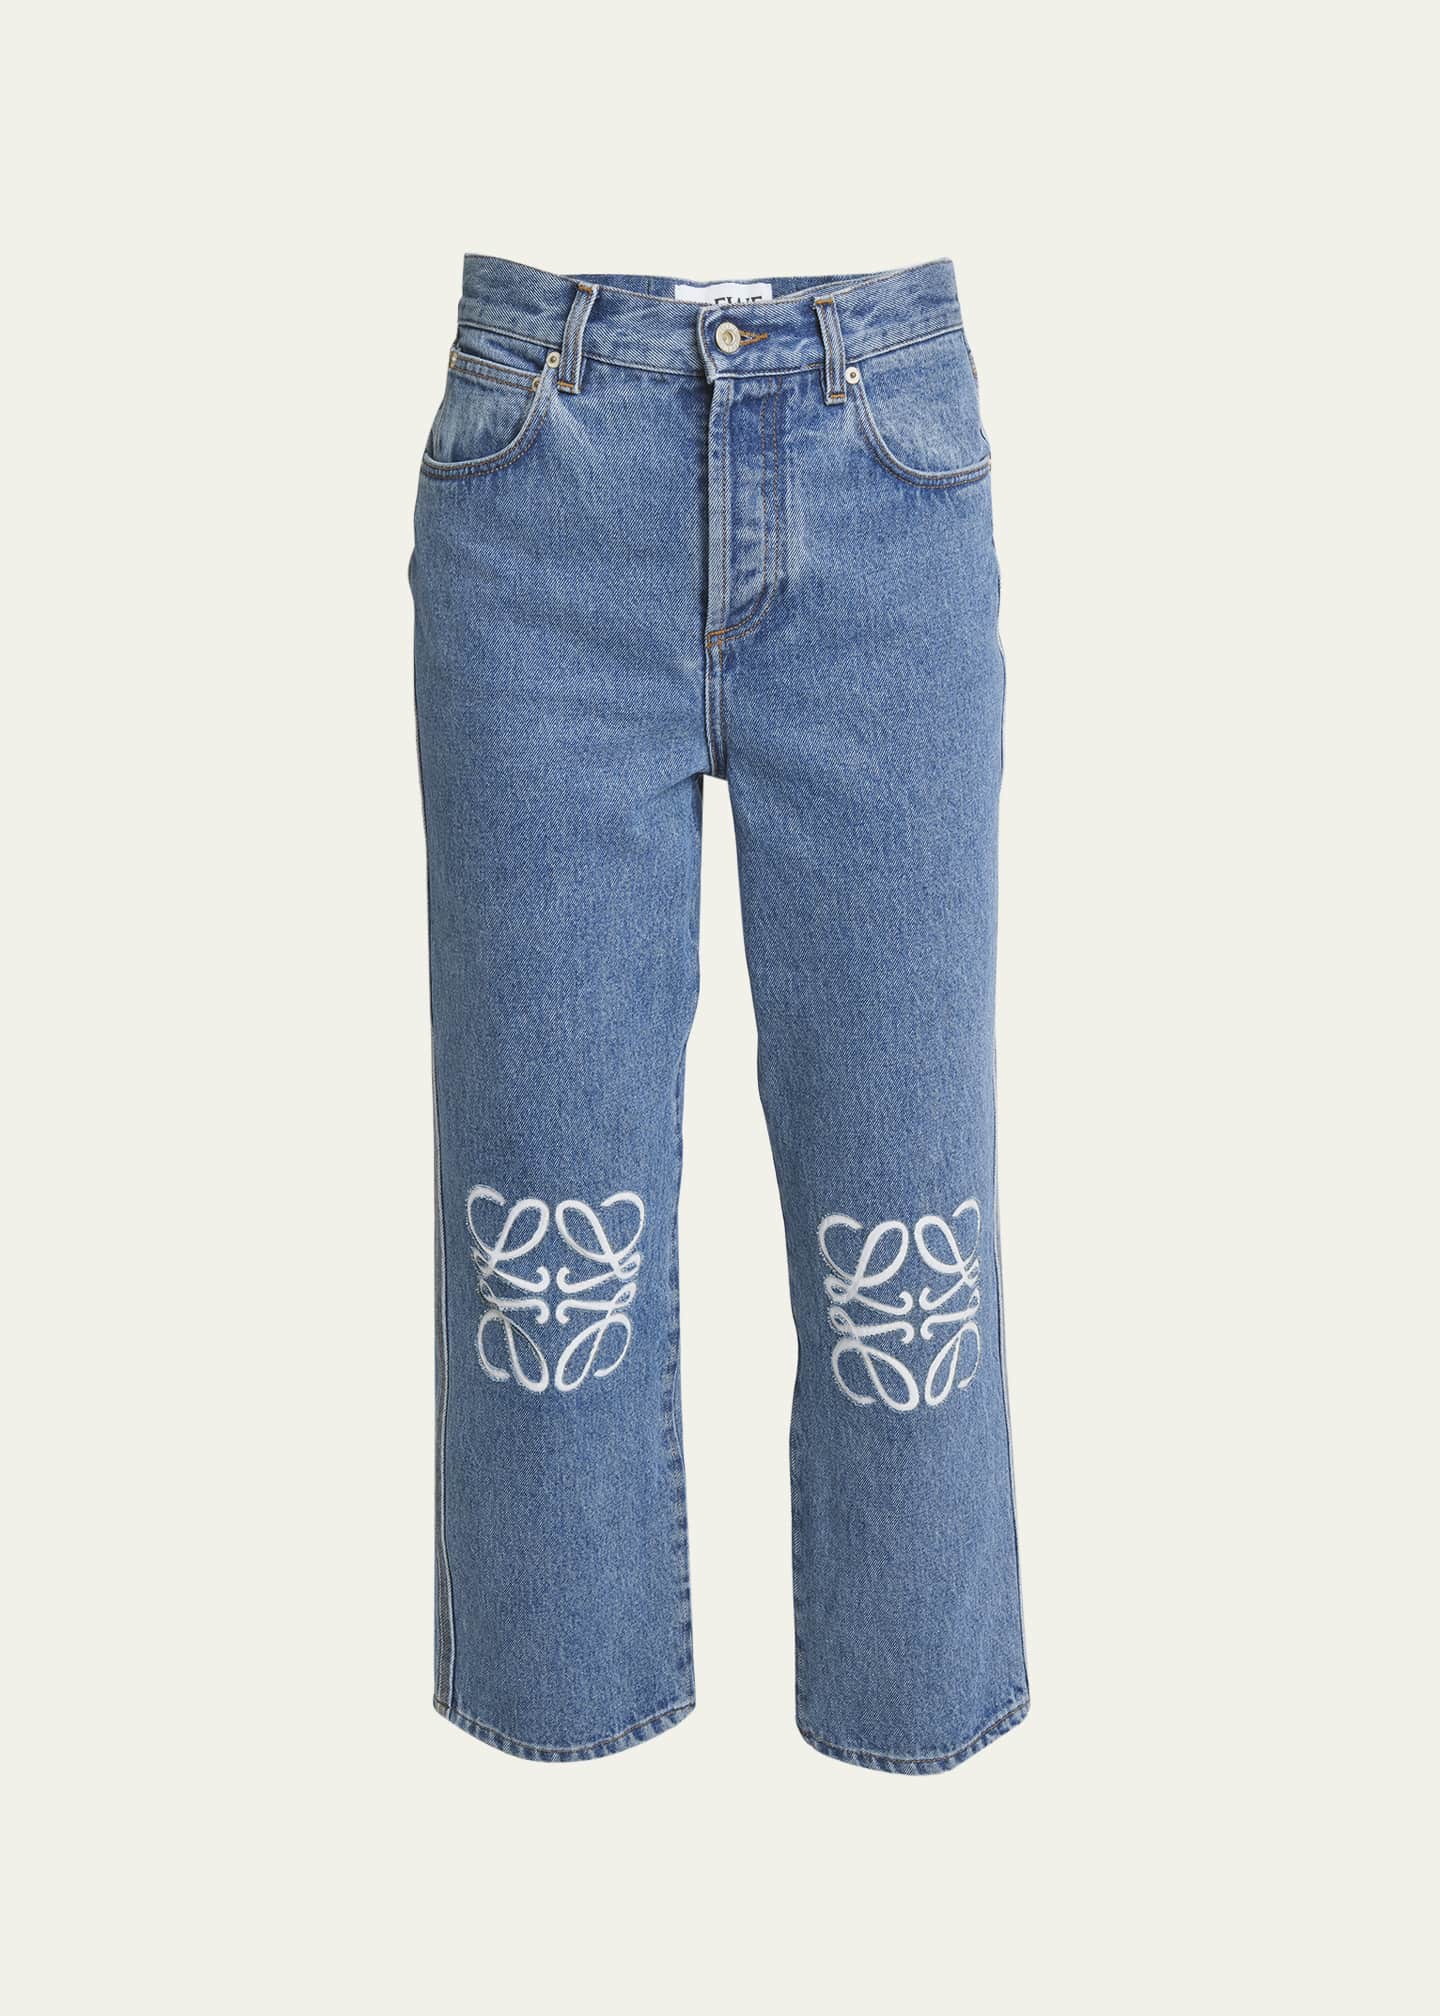 Loewe Cropped Jeans with Anagram Knee Detail - Bergdorf Goodman